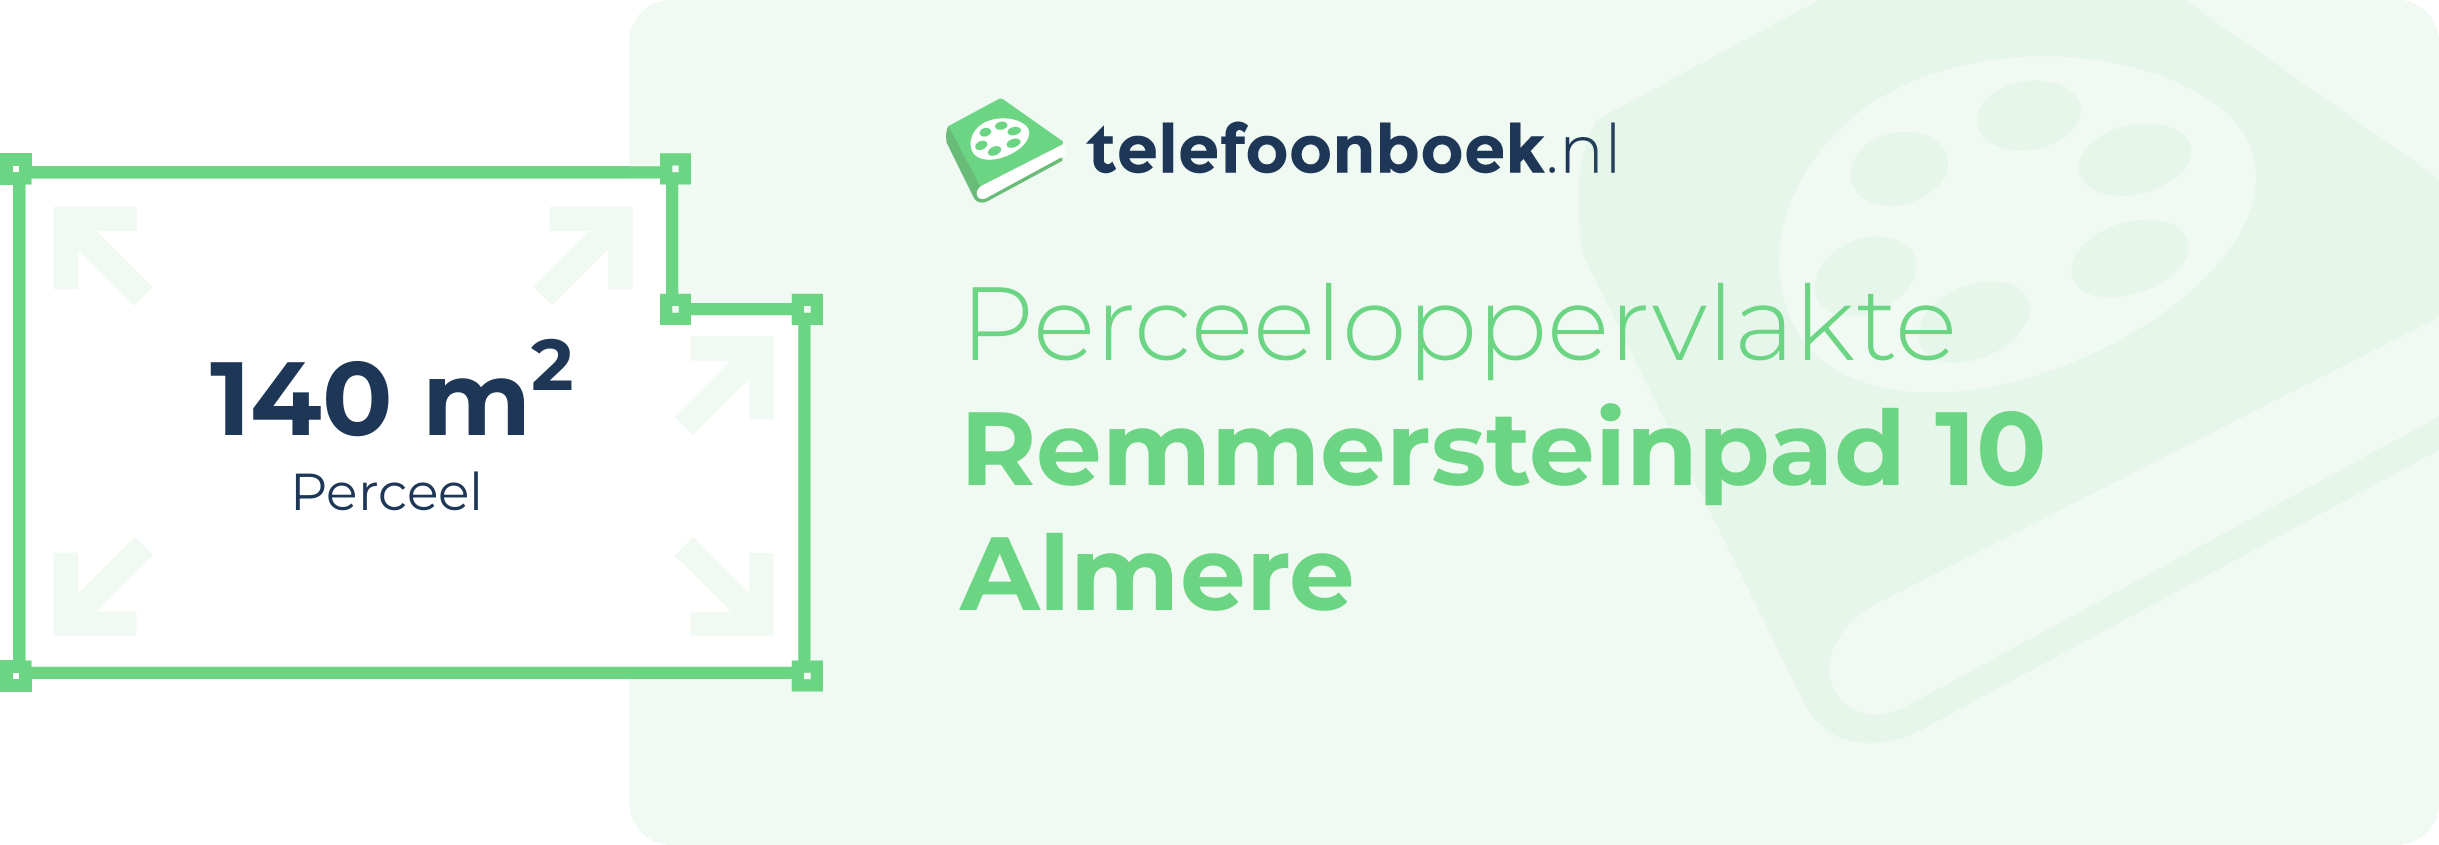 Perceeloppervlakte Remmersteinpad 10 Almere